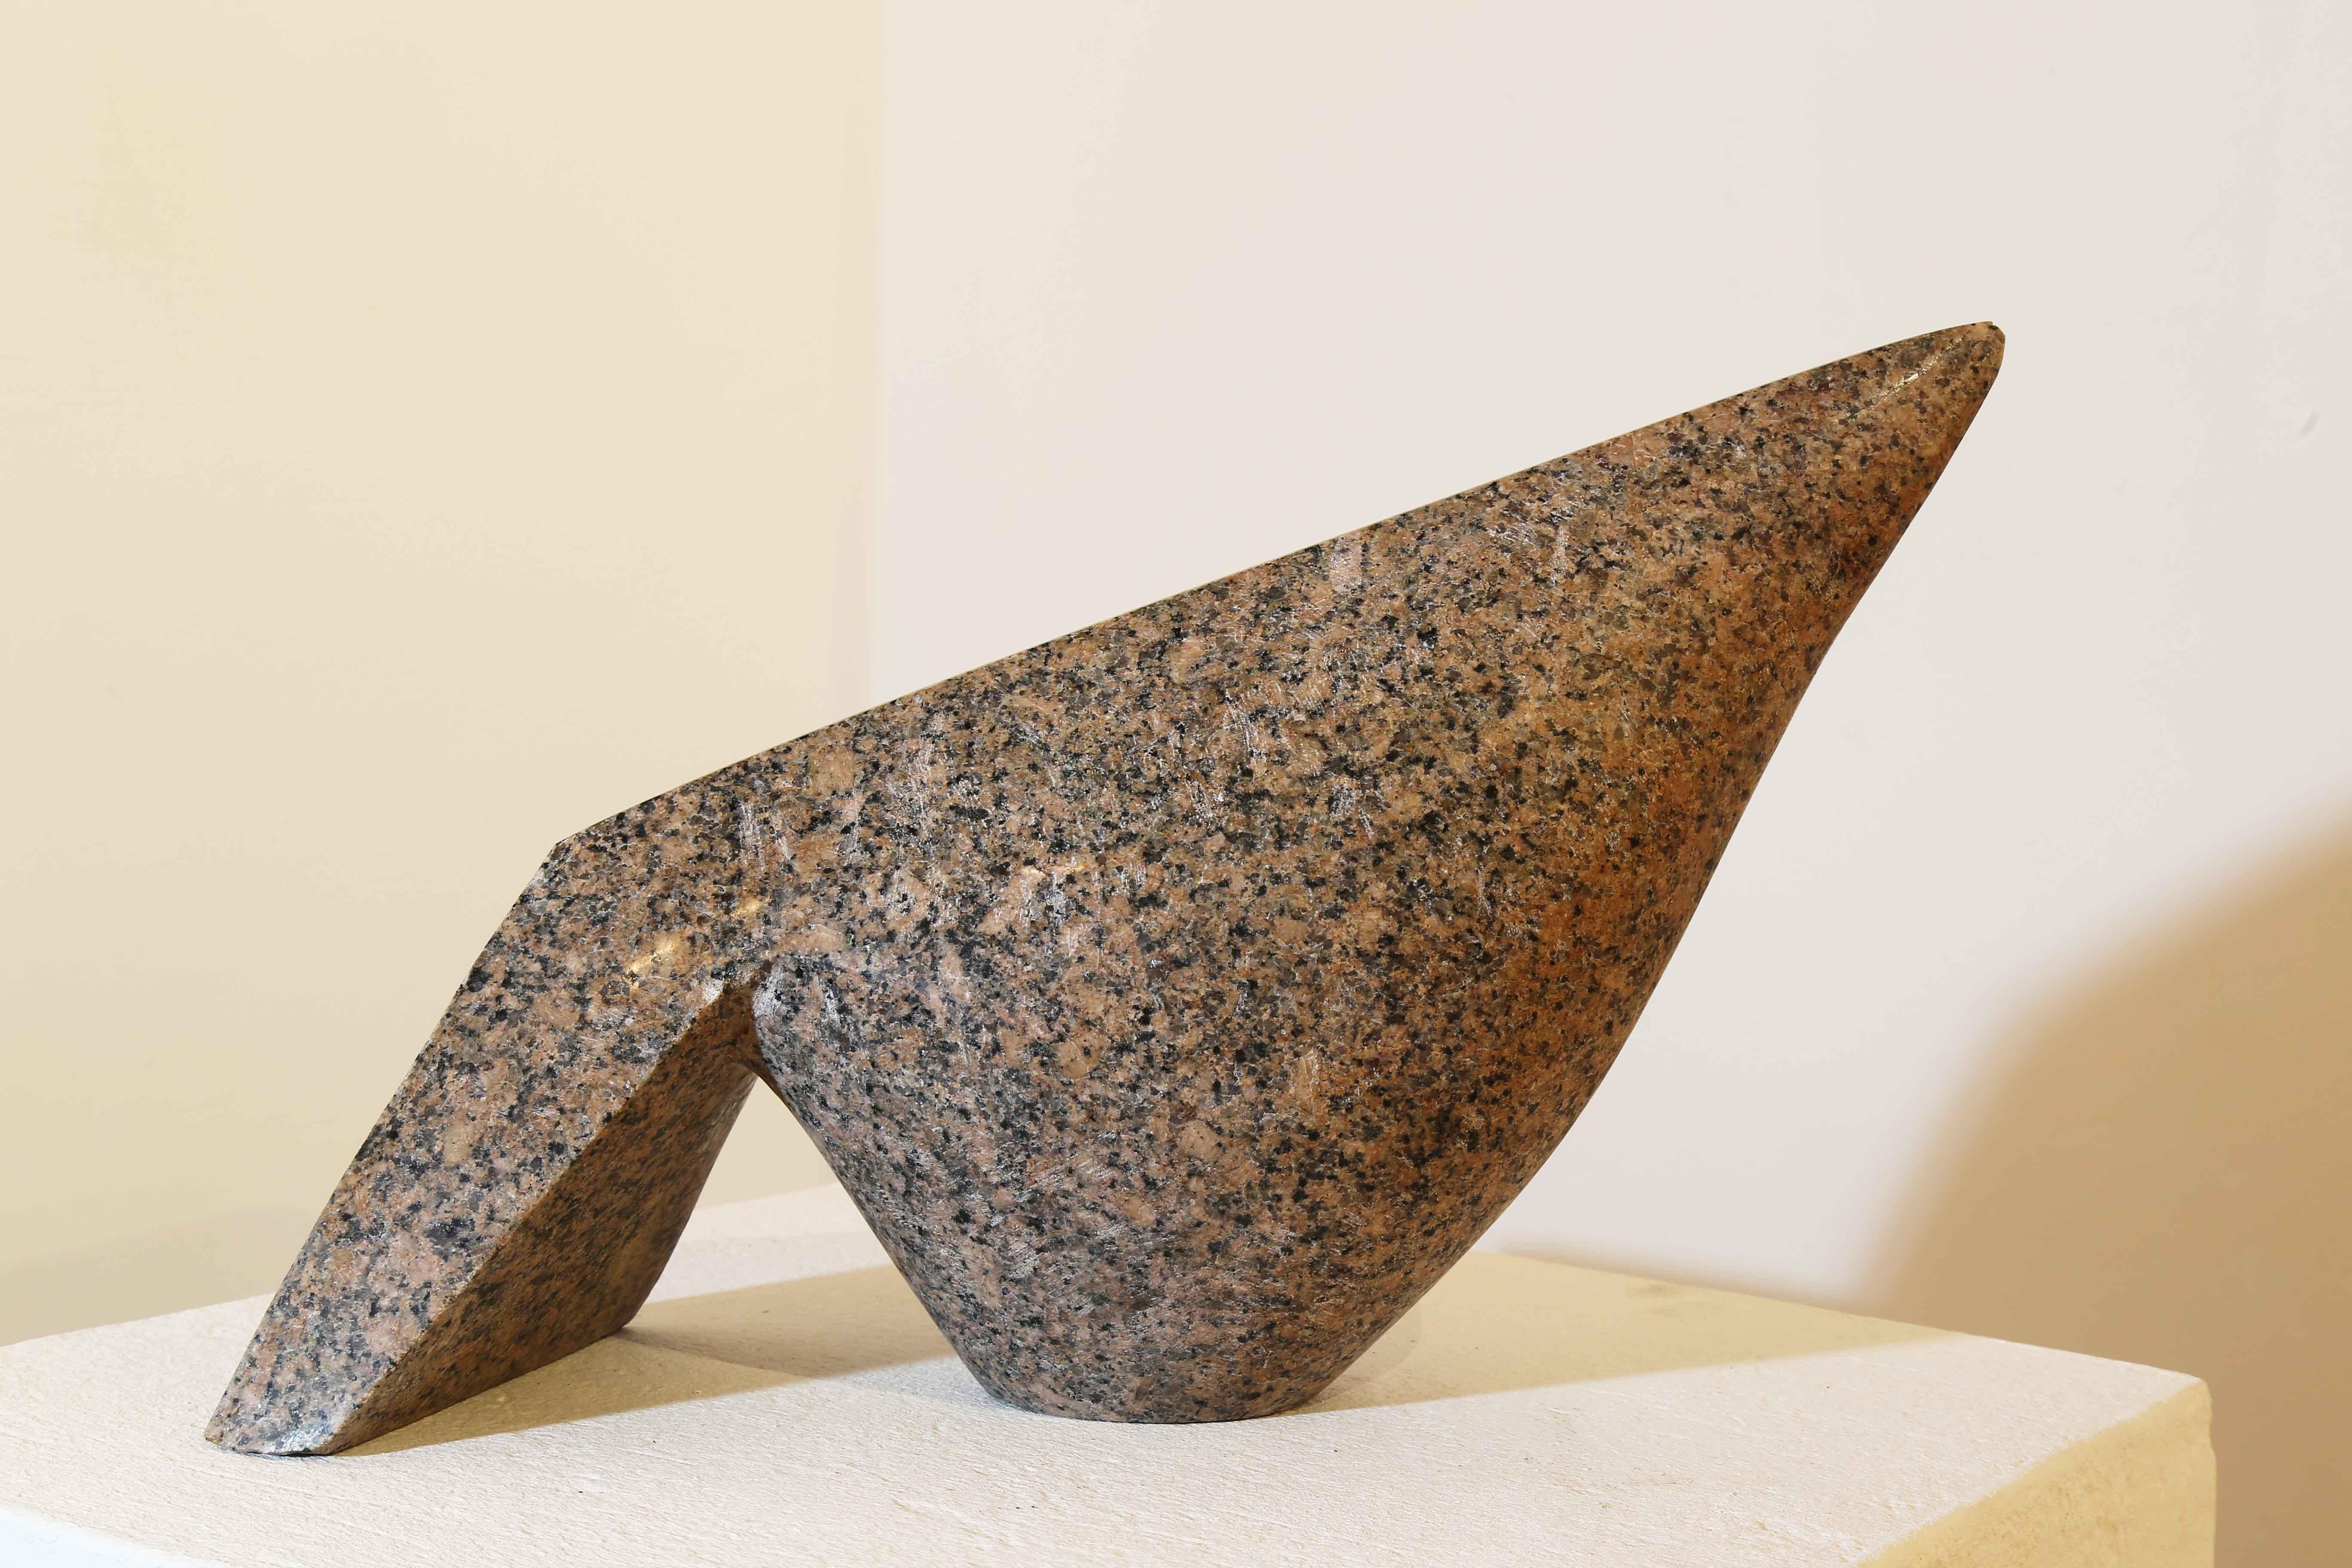 „The Pigeon“ Rote Granit-Skulptur 10" x 14" x 5" Zoll von Eman Barakat

Eman Barakat ist ein ägyptischer Nachkriegs- und zeitgenössischer Künstler, der 1988 geboren wurde. Ihre Arbeiten waren in mehreren Ausstellungen in wichtigen Galerien und